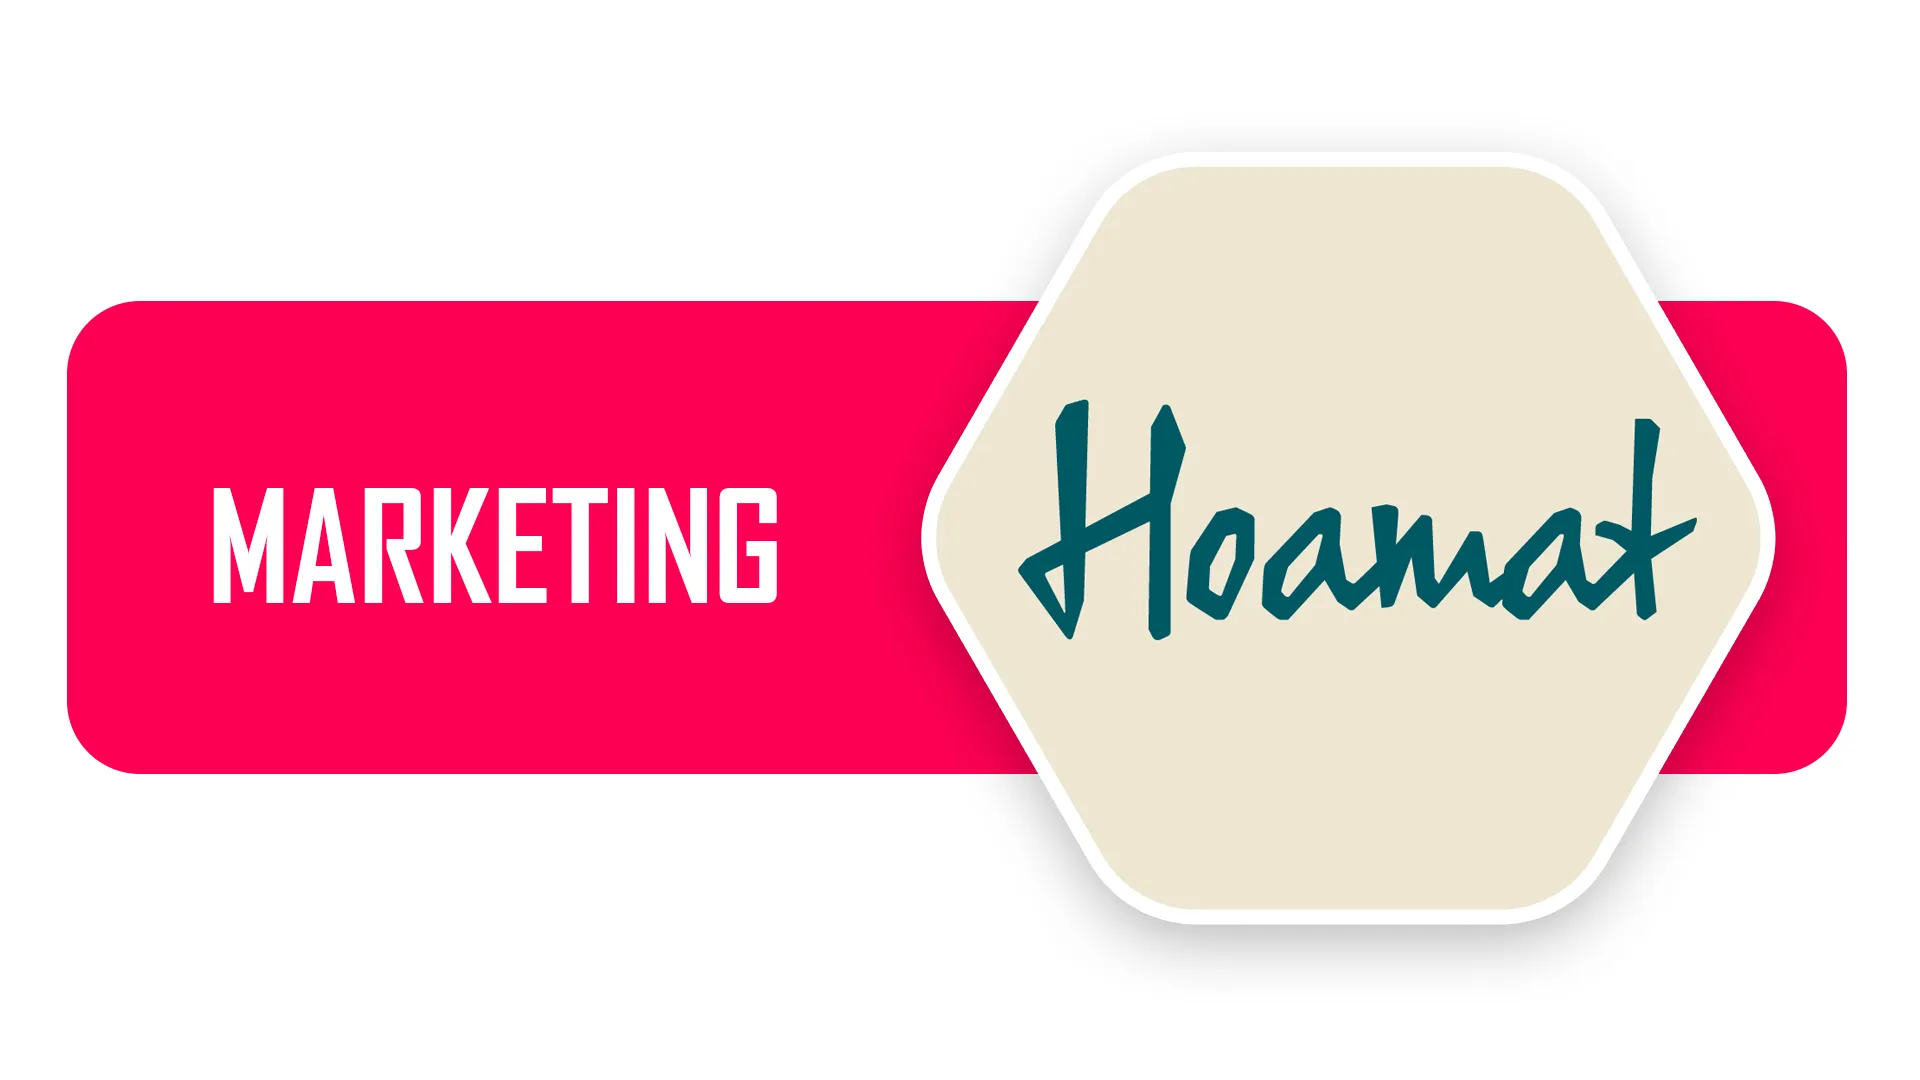 Corporate Branding & Marketing | HOAMAT